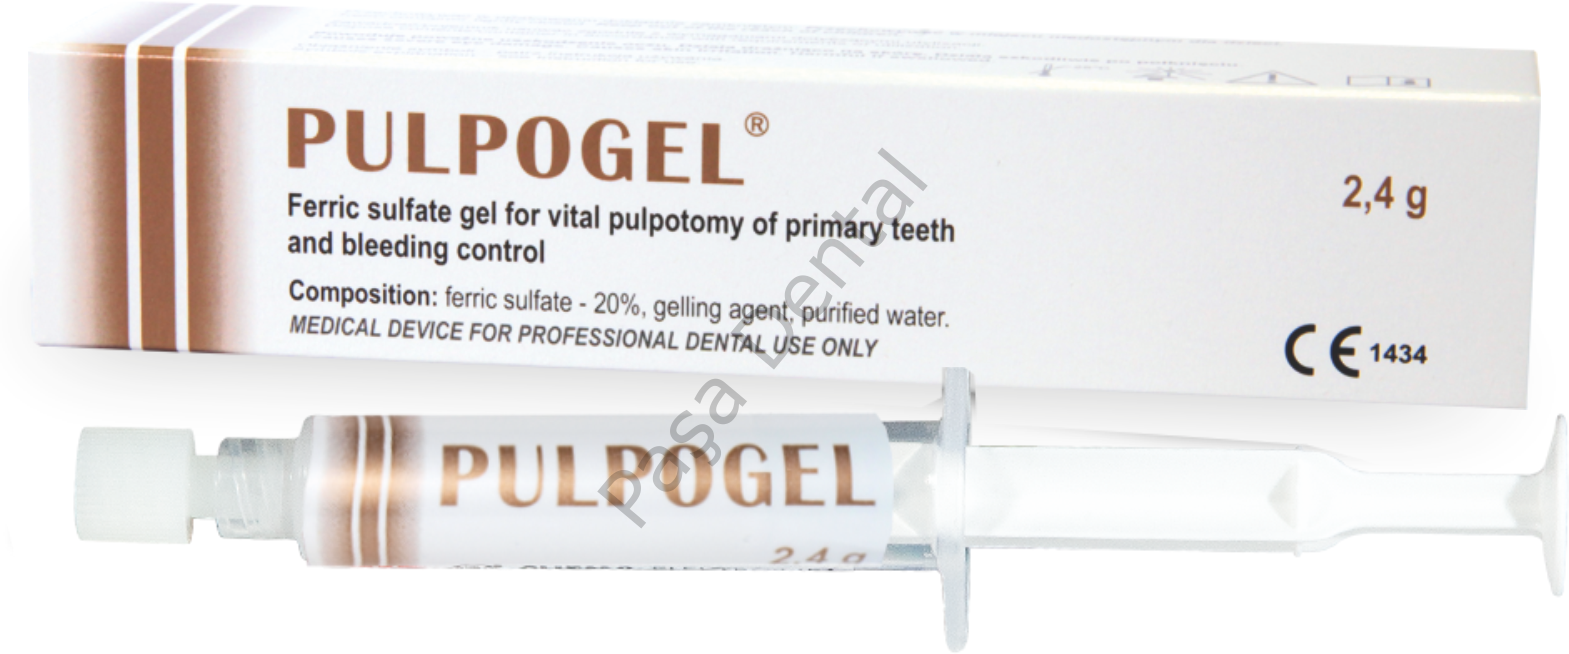 Pulpogel-Süt Dişlerinde Vital Pulpotomi ve Kanama Kontrolü için Ferrik Sülfat Jel